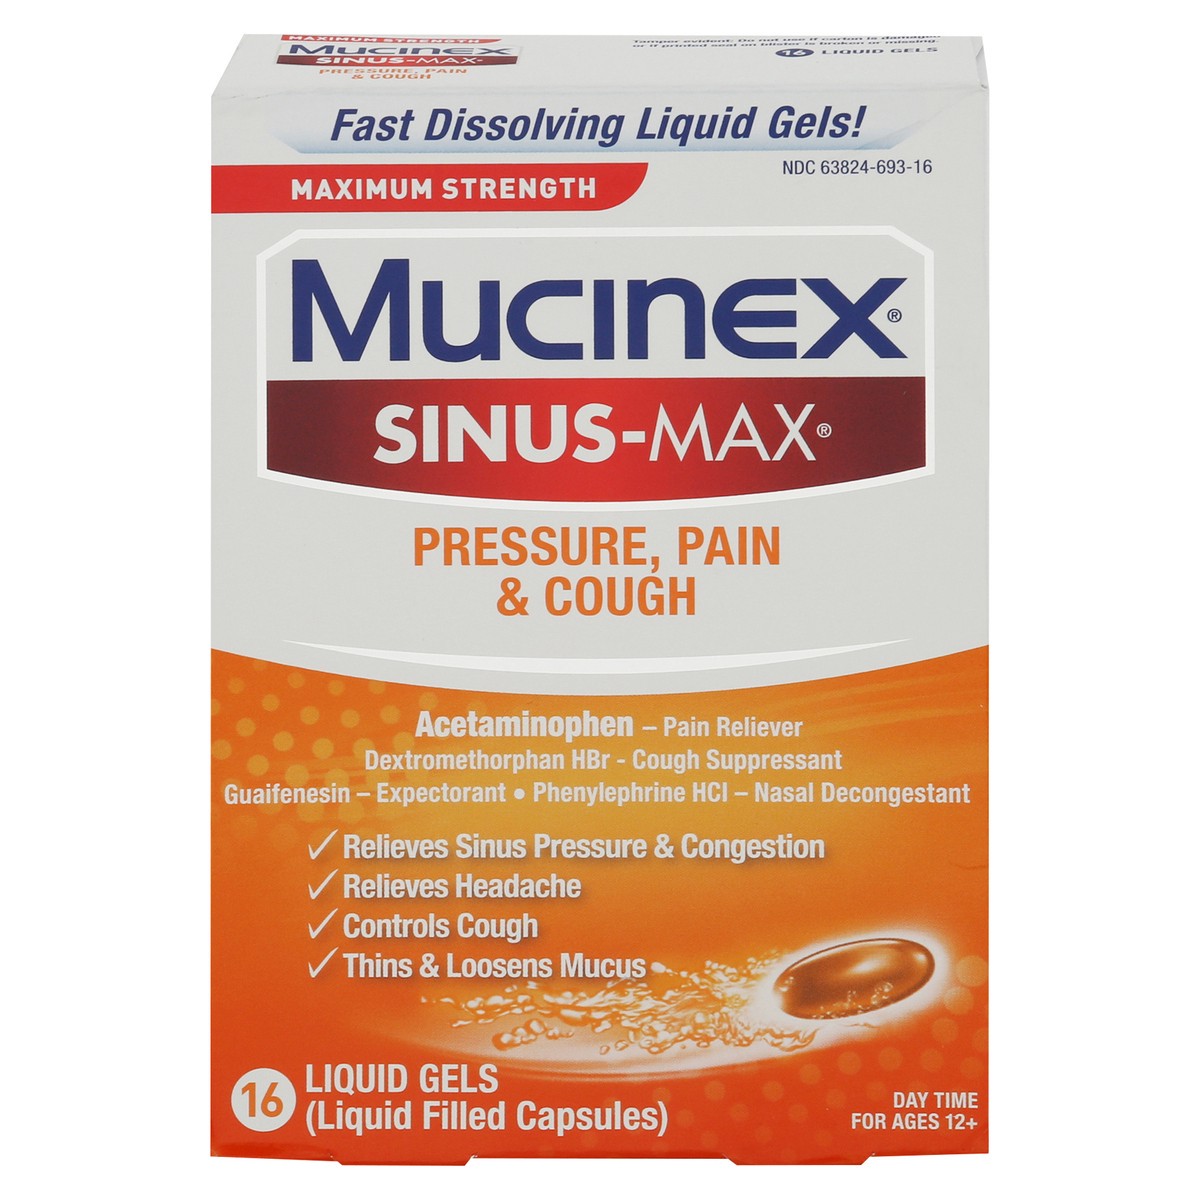 slide 1 of 13, Mucinex Sinus-Max Max Strength Pressure, Pain & Cough Liquid Gels, 16ct, 16 ct